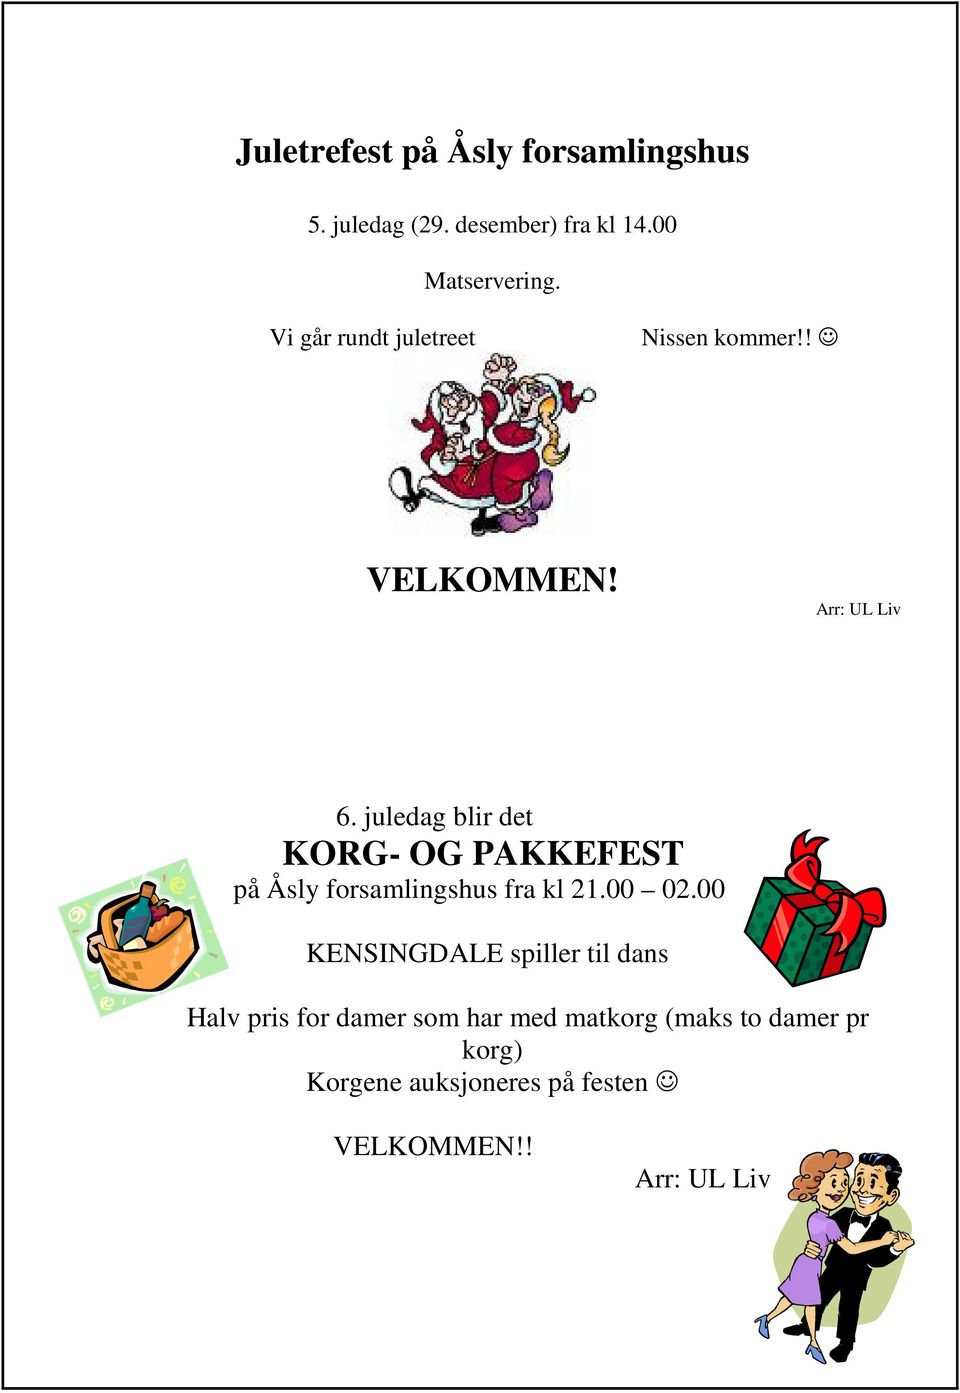 juledag blir det KORG- OG PAKKEFEST på Åsly forsamlingshus fra kl 21.00 02.